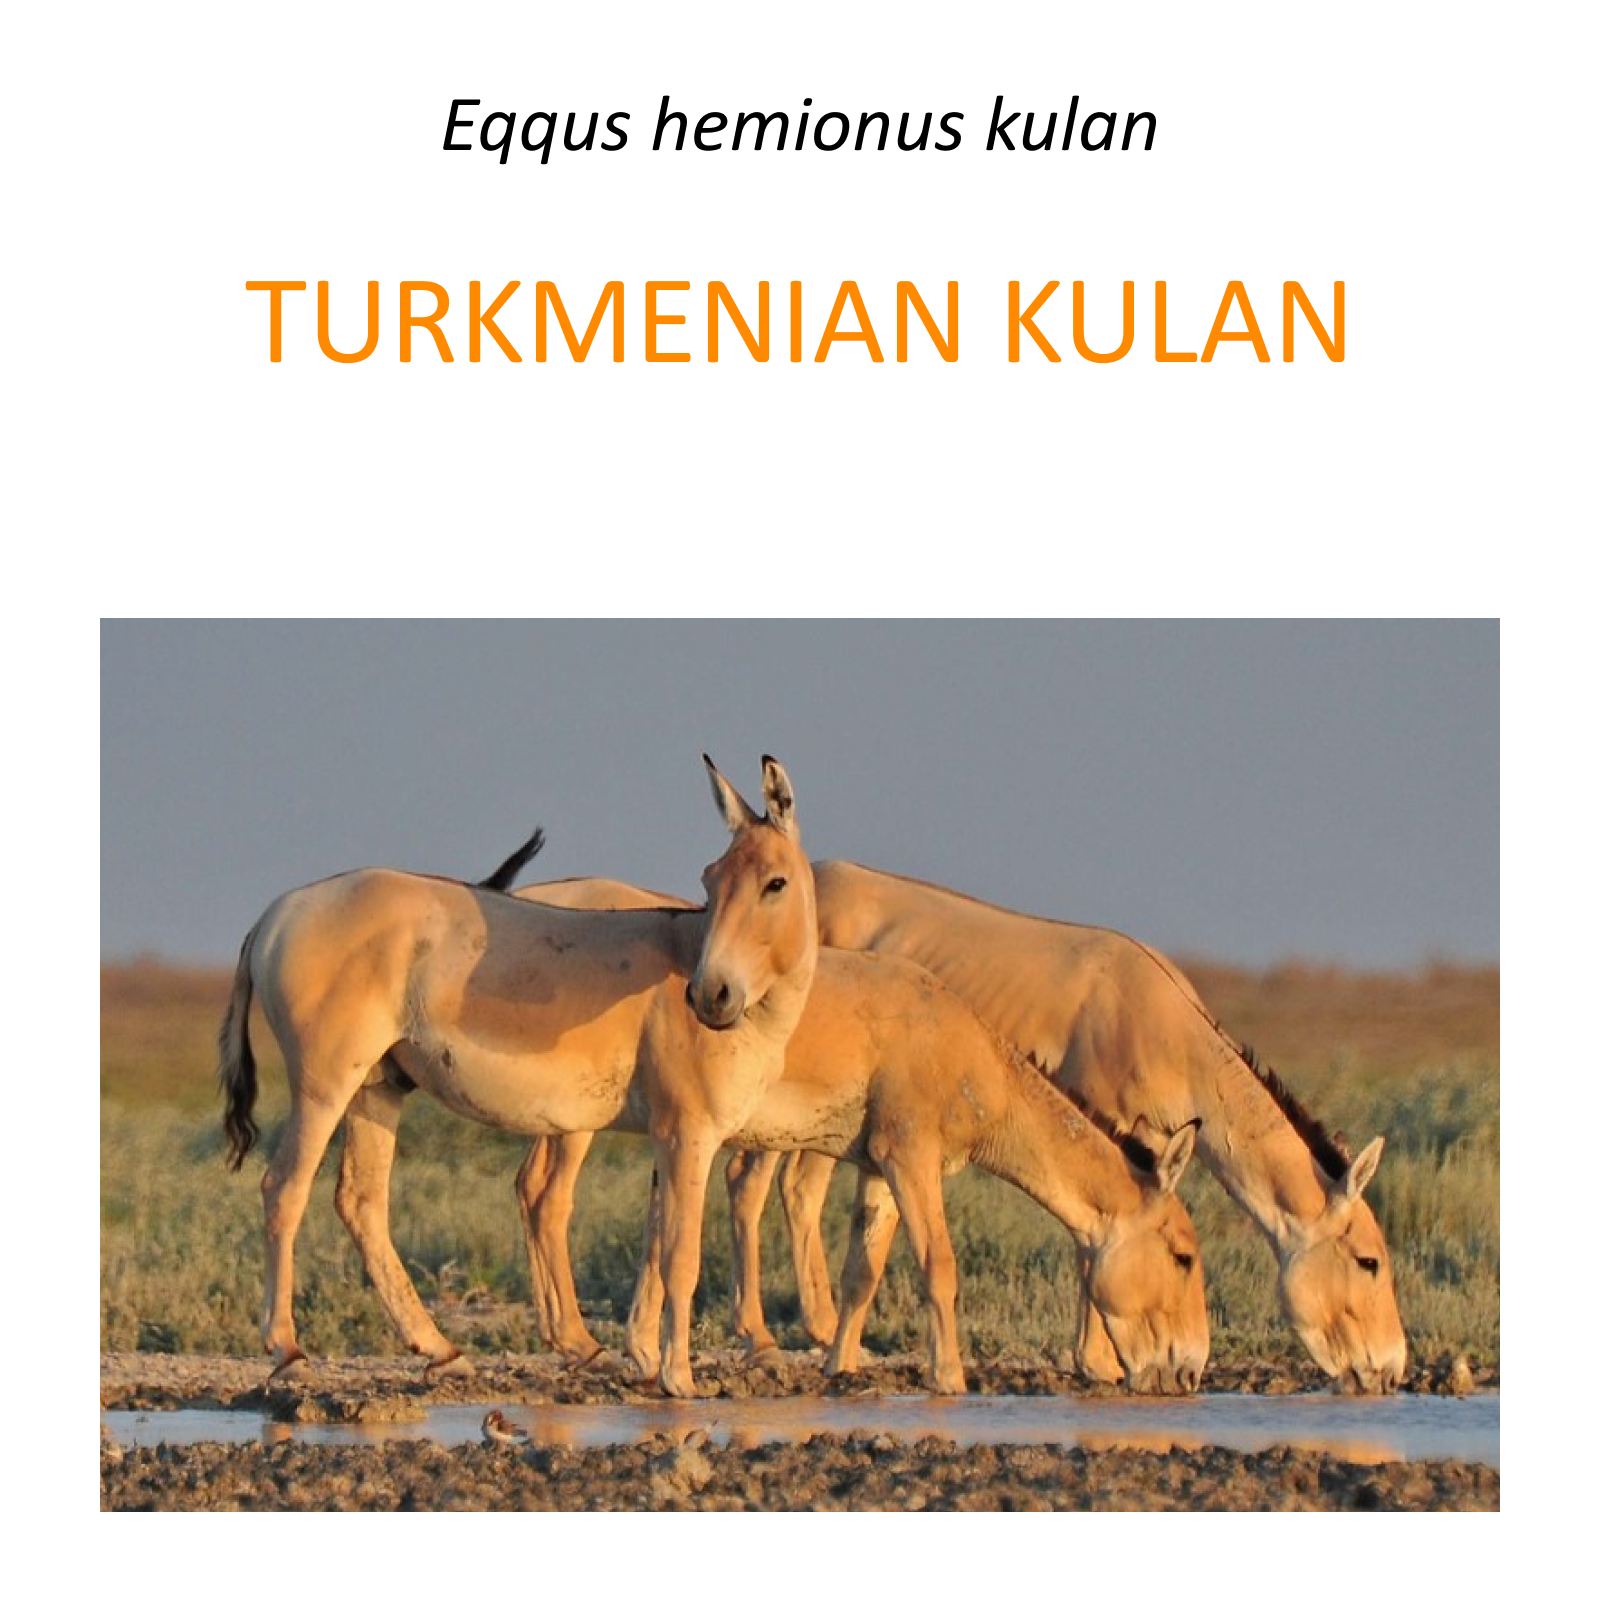 Turkmenian kulan translocation project in Kazahstan